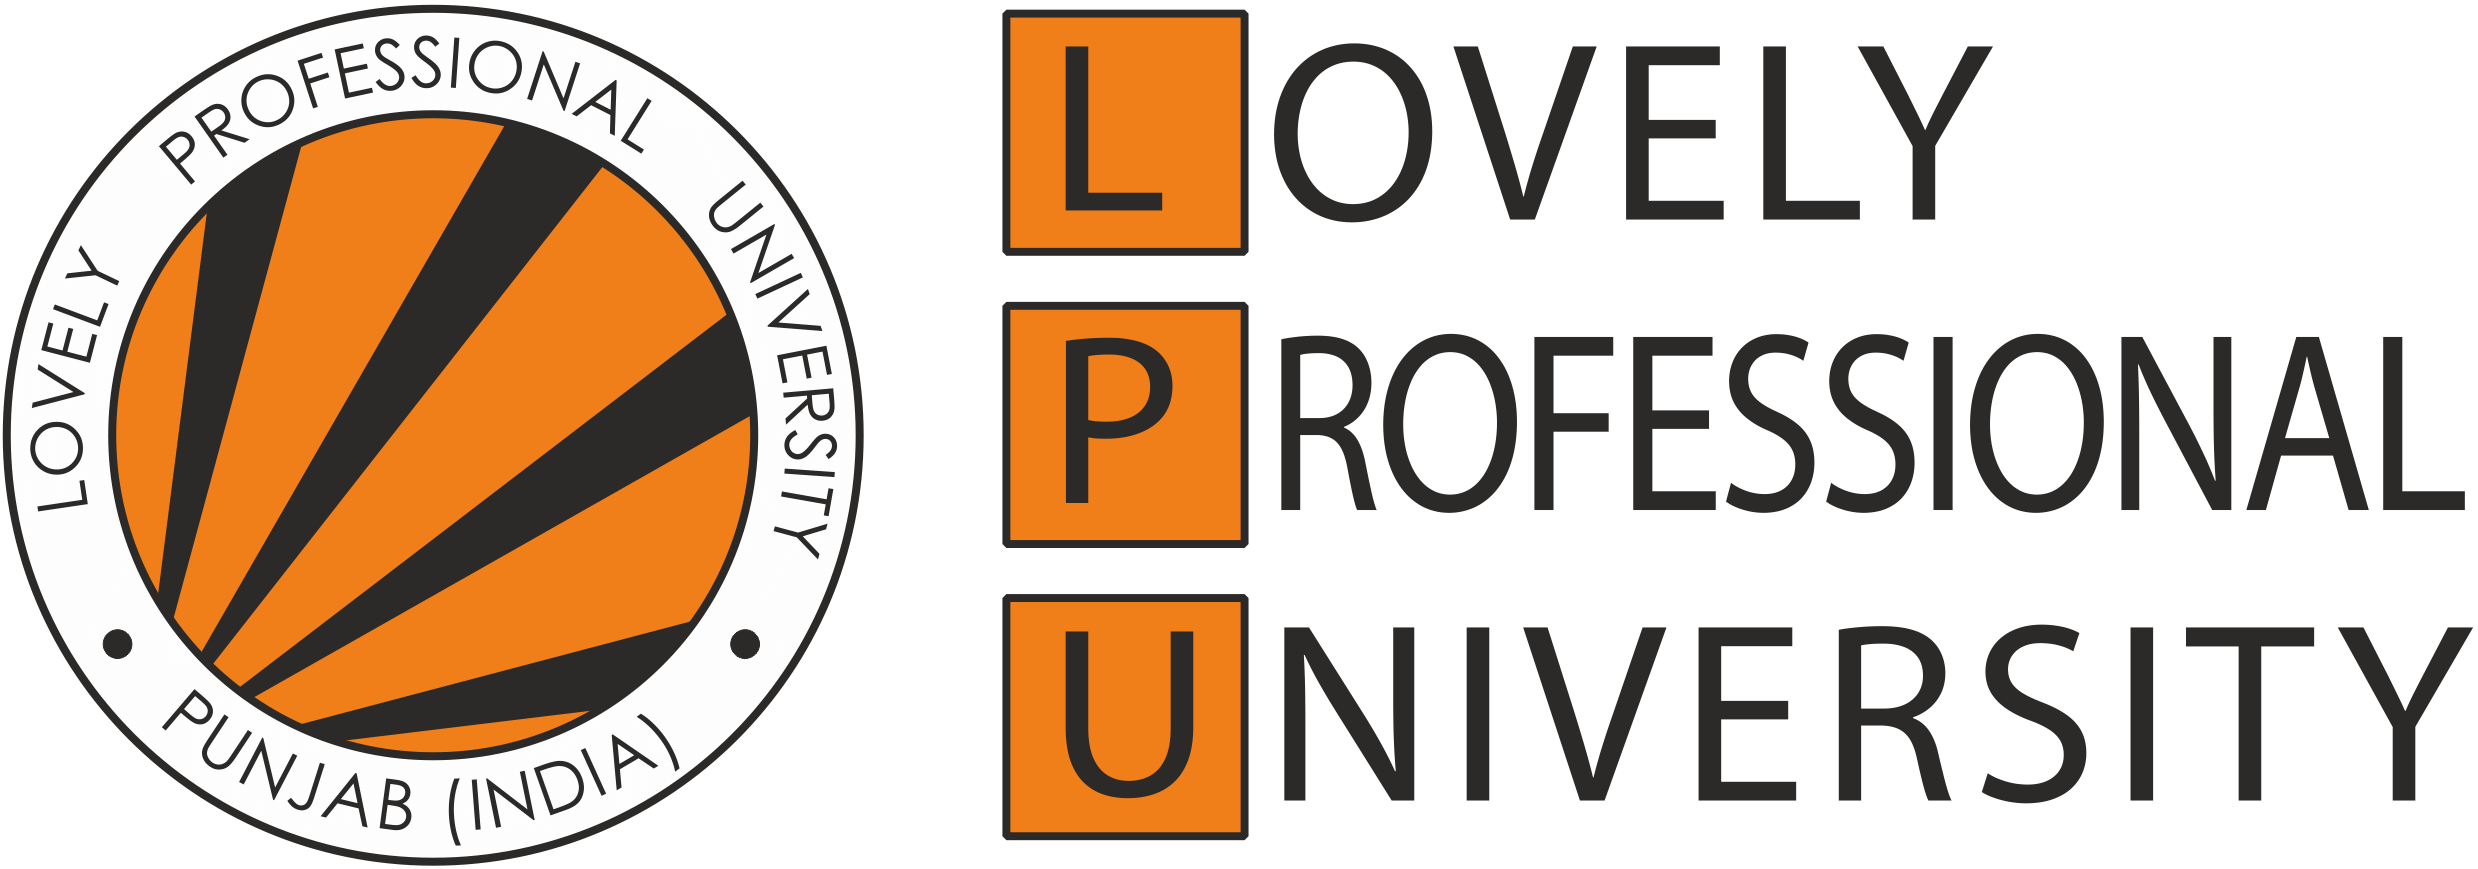 lpu-logo-lovely_professional_university